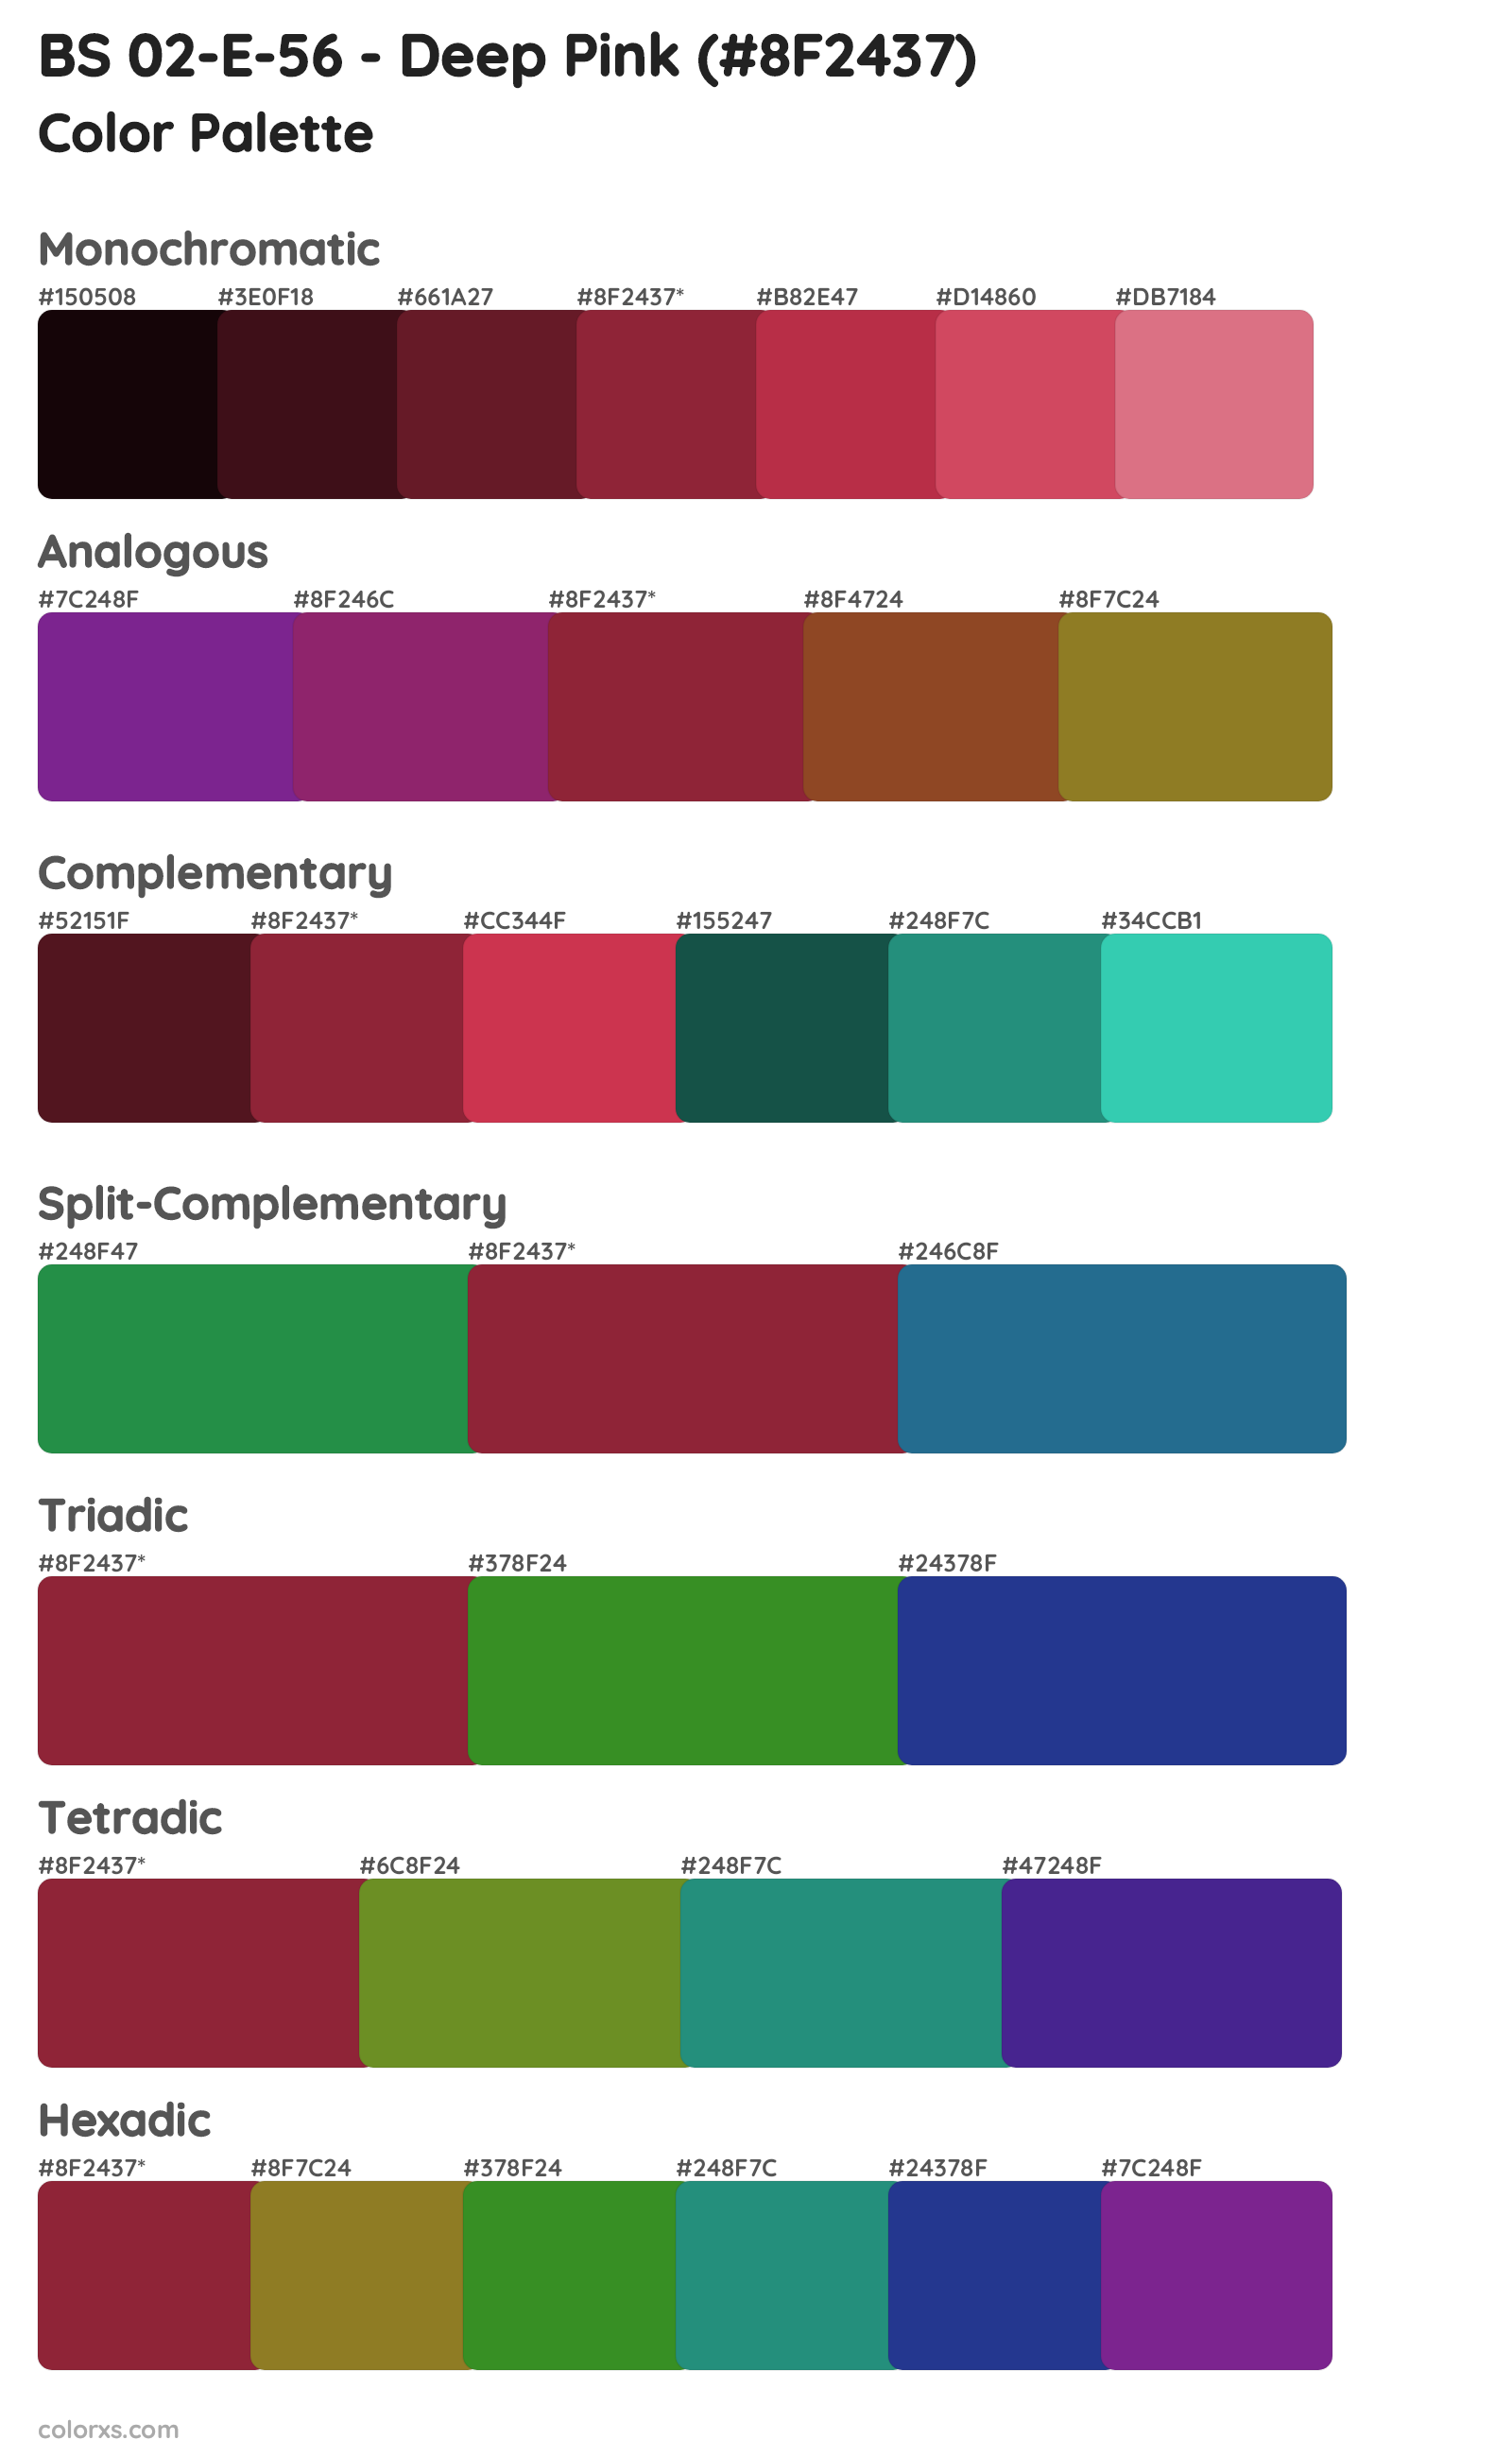 BS 02-E-56 - Deep Pink Color Scheme Palettes